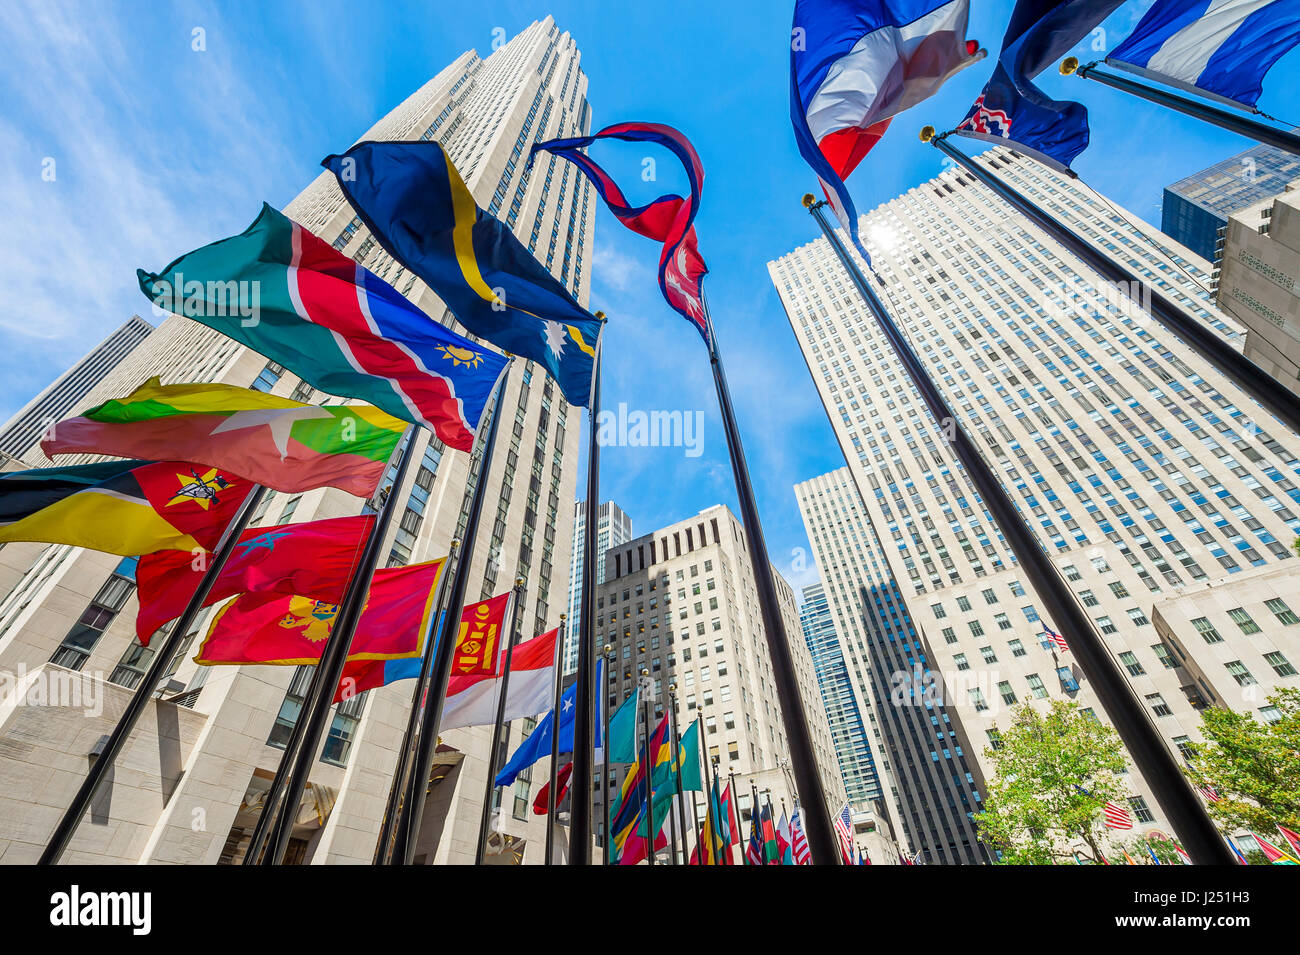 La CIUDAD DE NUEVA YORK - 2 de septiembre de 2016: banderas internacionales al pie de los rascacielos de Art Deco en el Rockefeller Center. Foto de stock